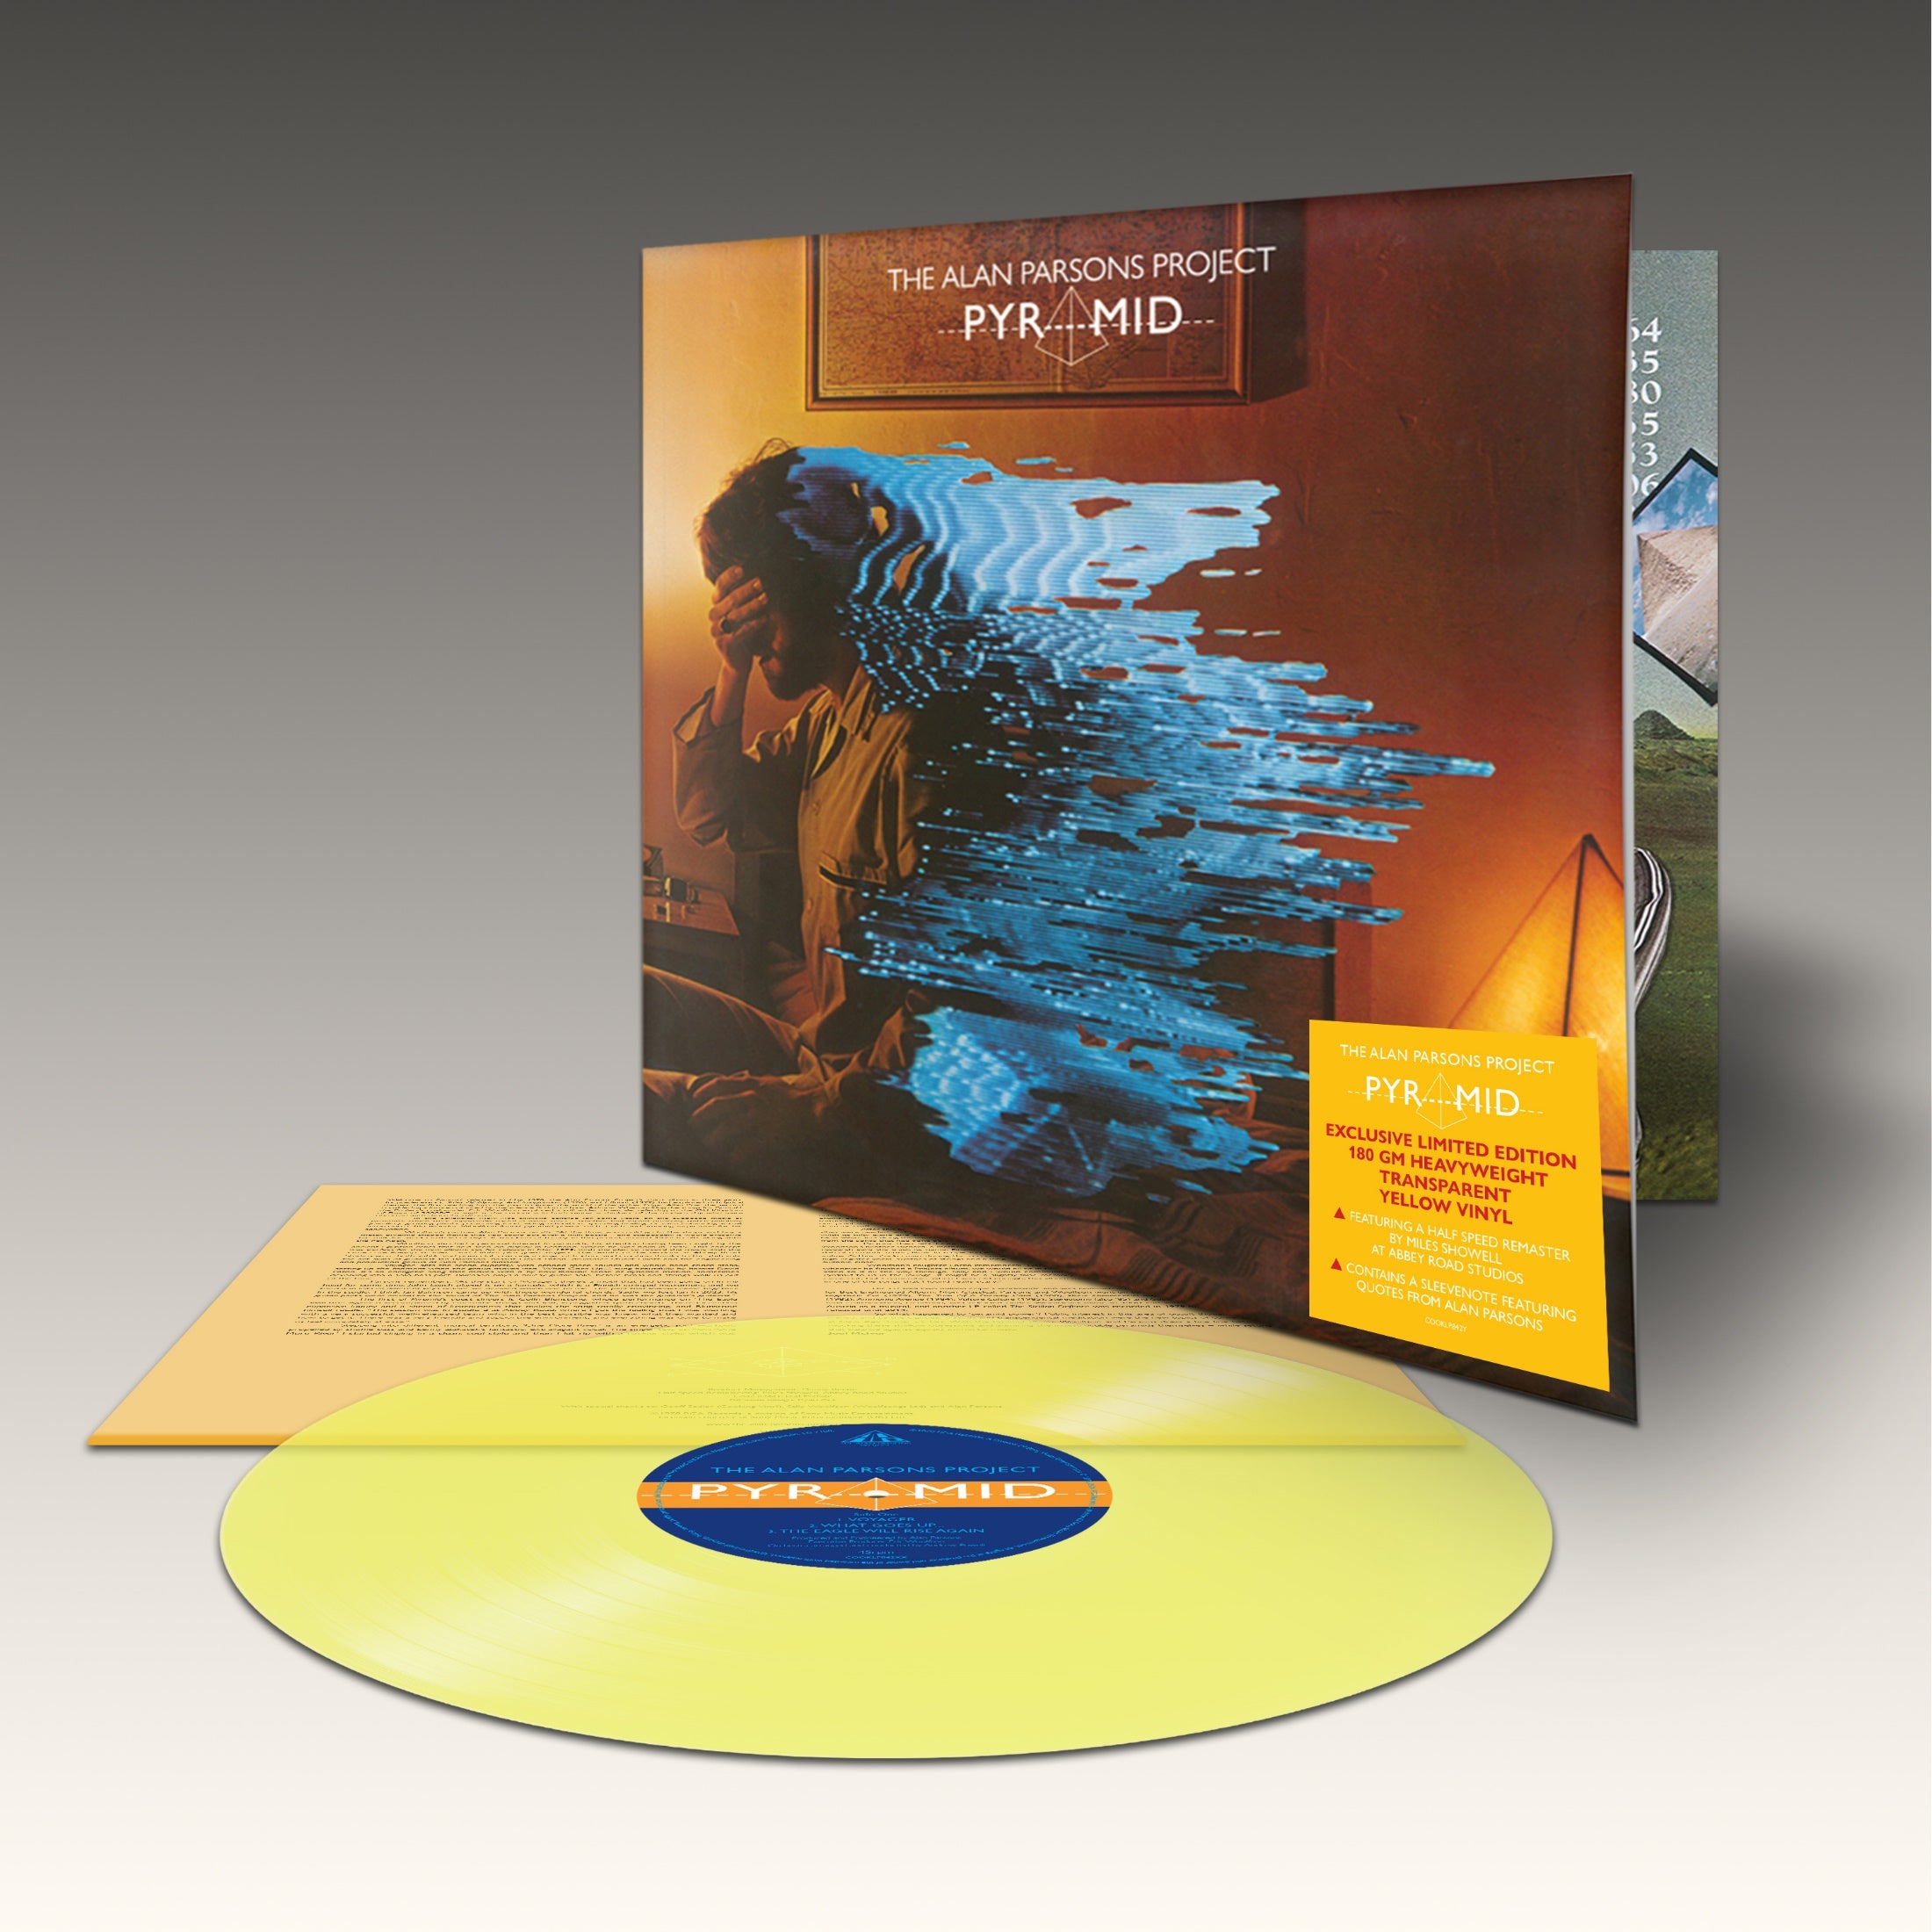 Alan Parsons Project's 'Pyramid' keert terug op exclusief geel vinyl voor Nederlandse fans